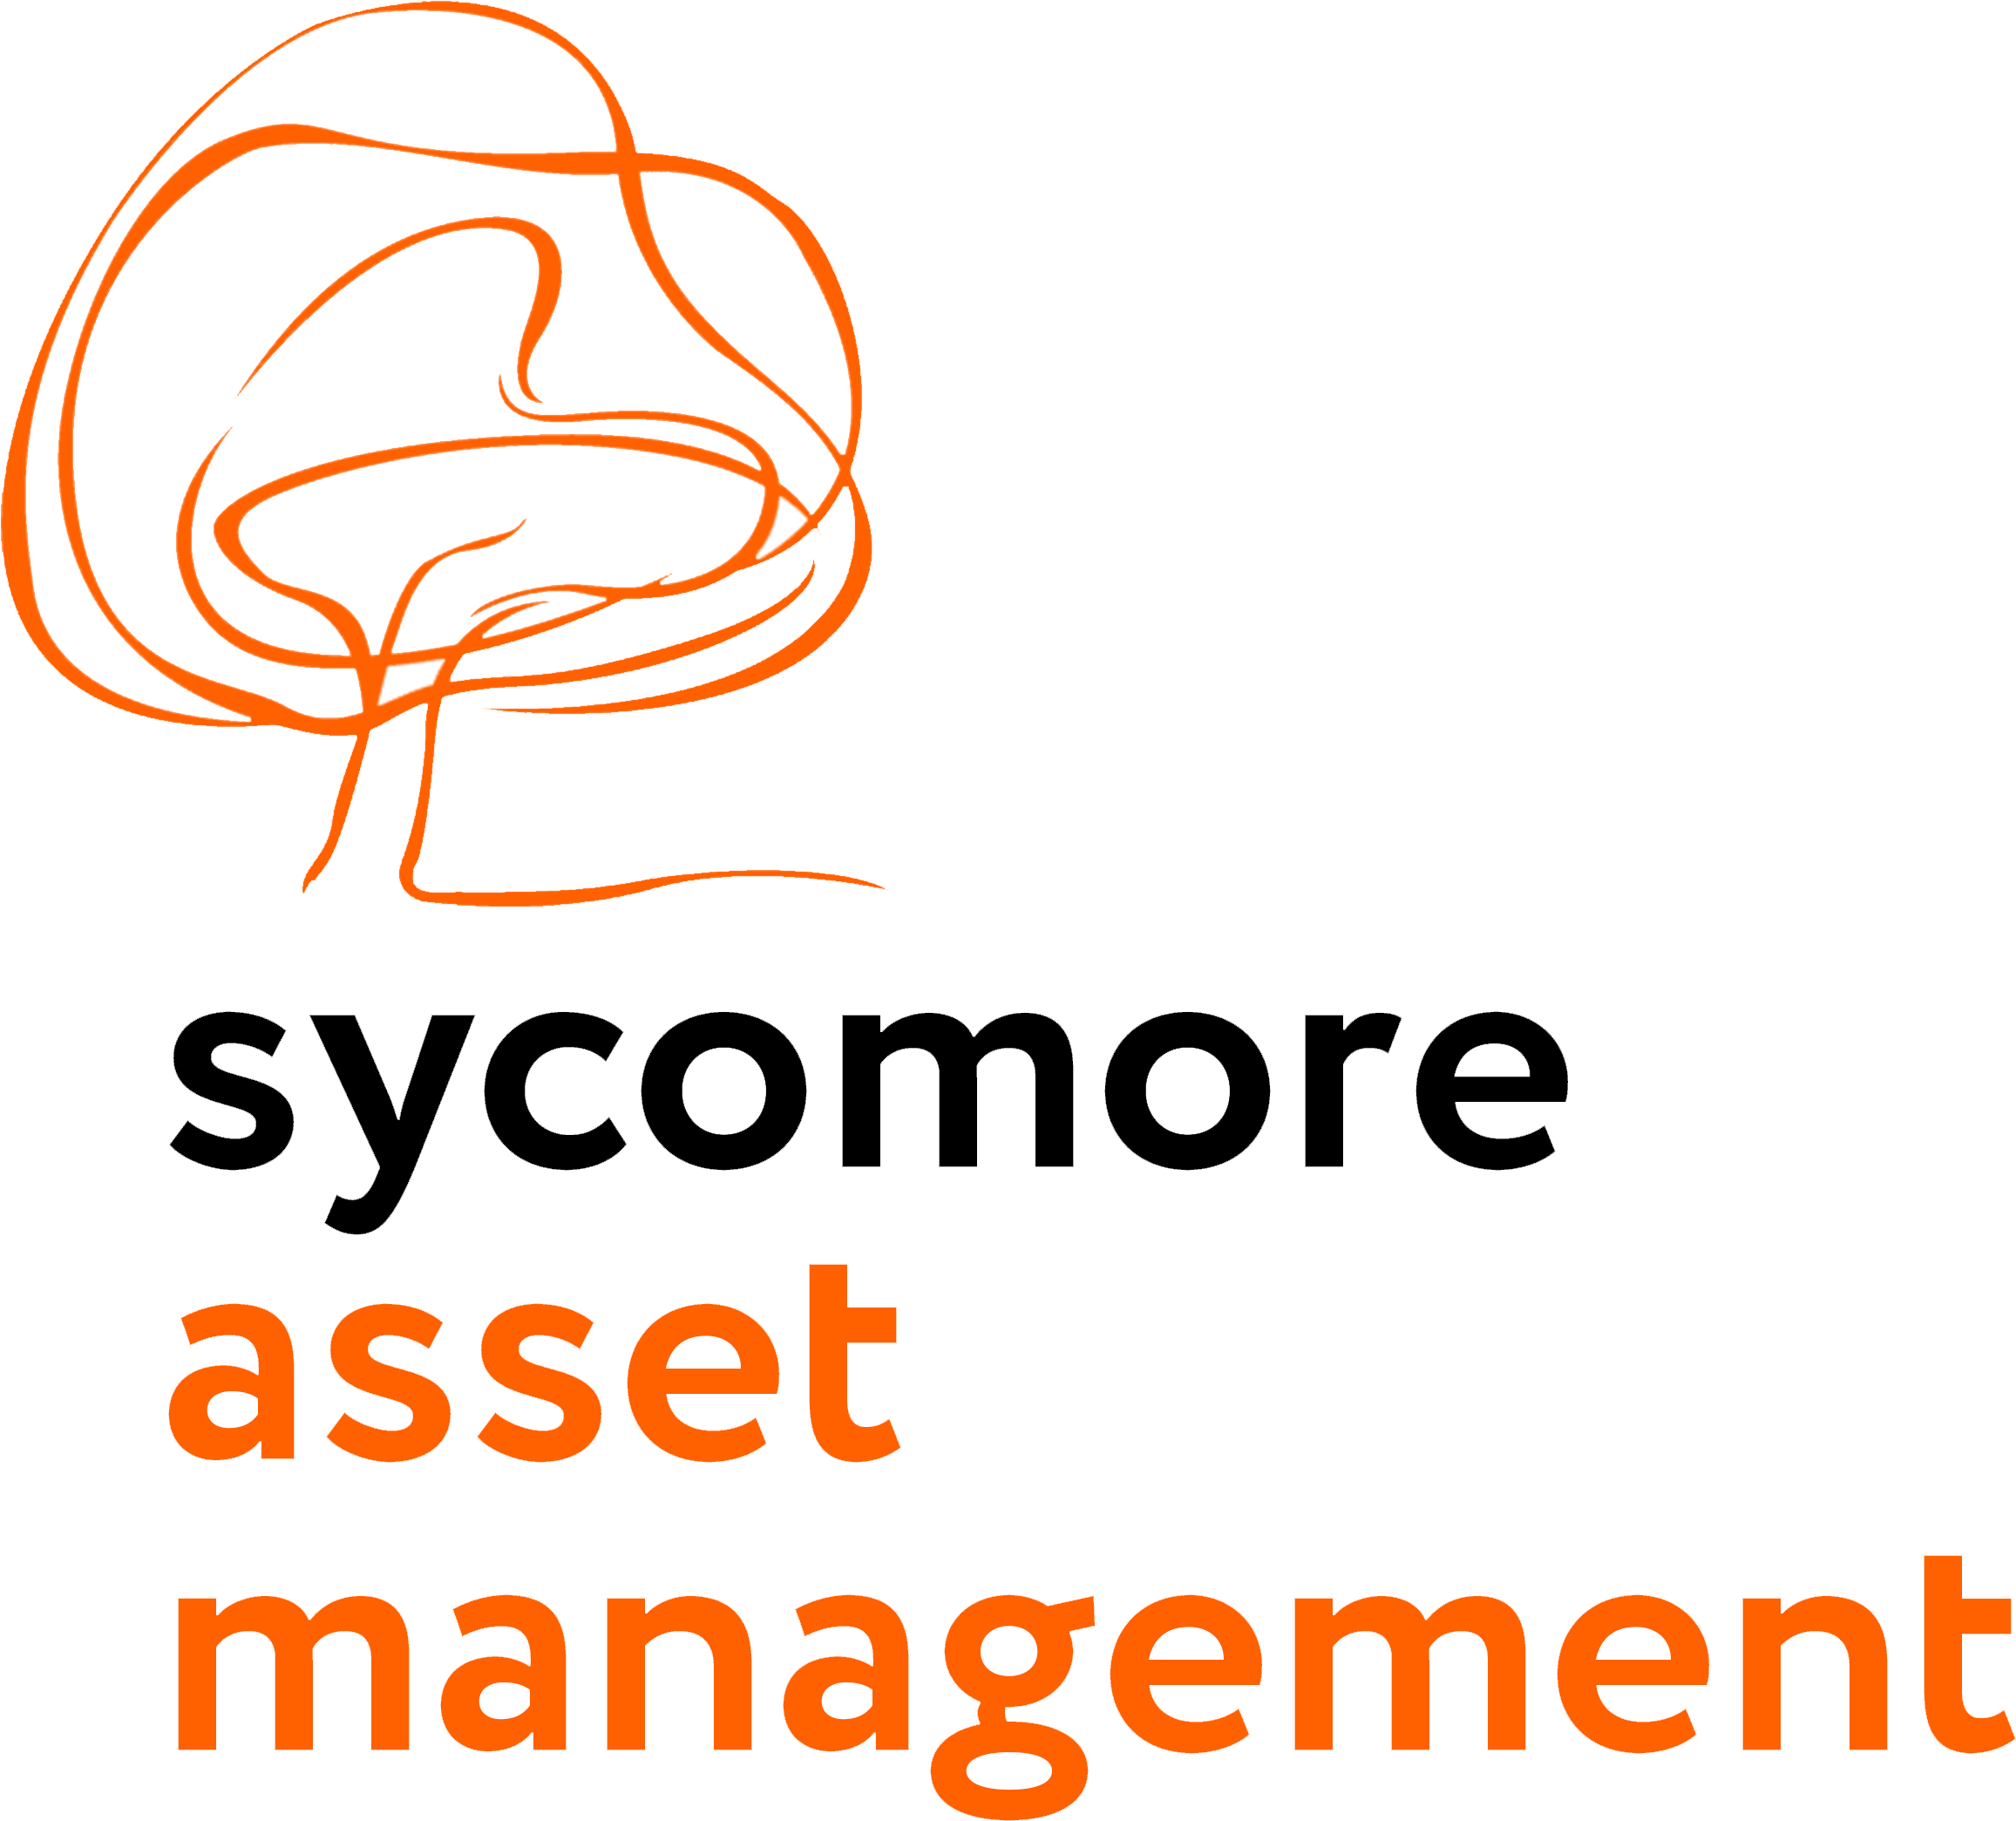 Sycomore logo